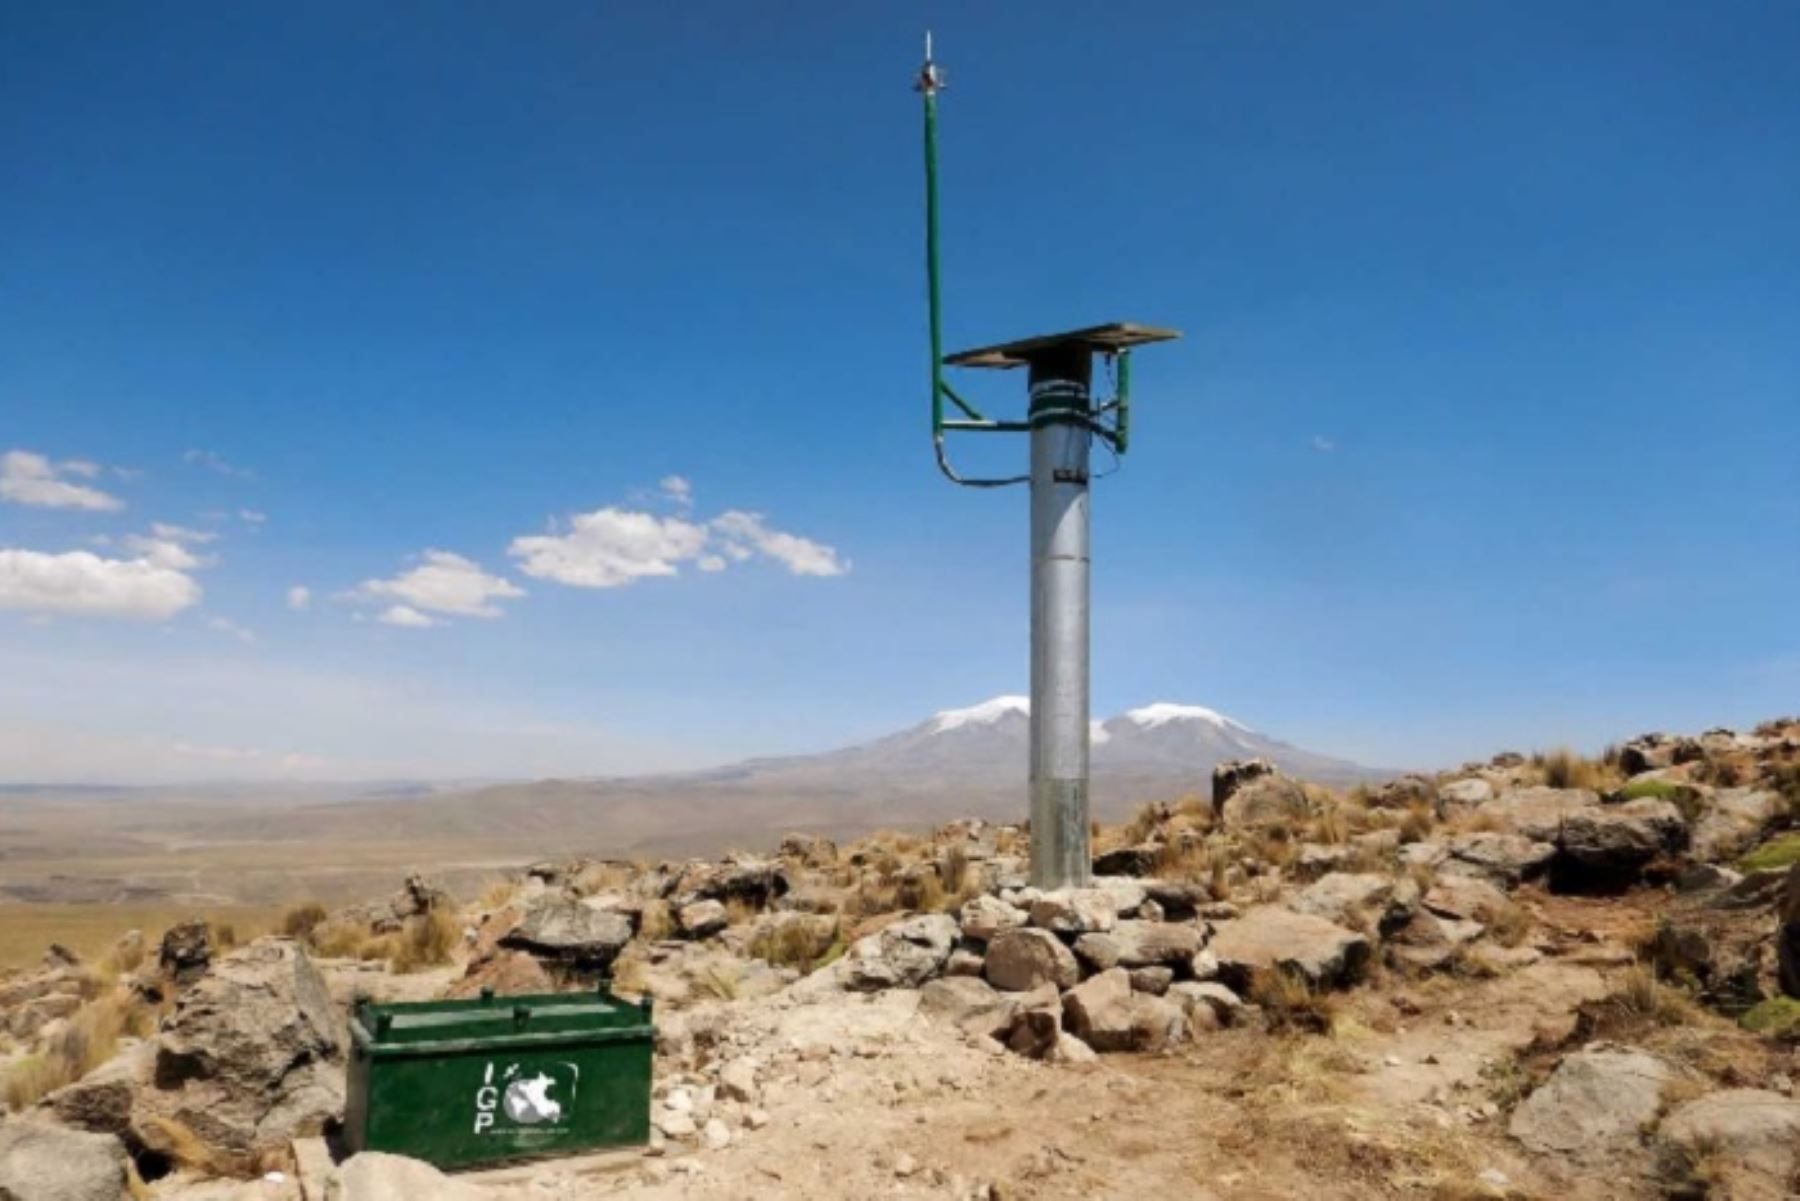 Trabajos se efectuaron en el marco de la ejecución del proyecto de “Mejoramiento y Ampliación del Sistema de Alerta Volcánica en el Sur del Perú”, por el cual el Estado encargó al Instituto Geofísico del Perú la expansión de redes de vigilancia en tiempo real en 10 volcanes activos del país.